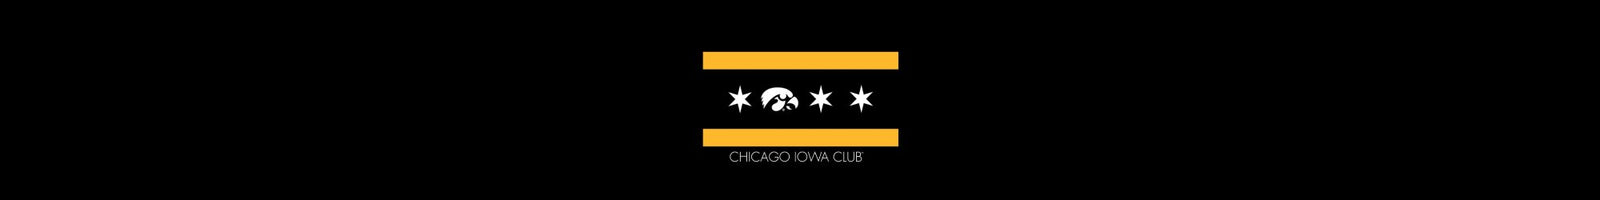 Chicago Iowa Club